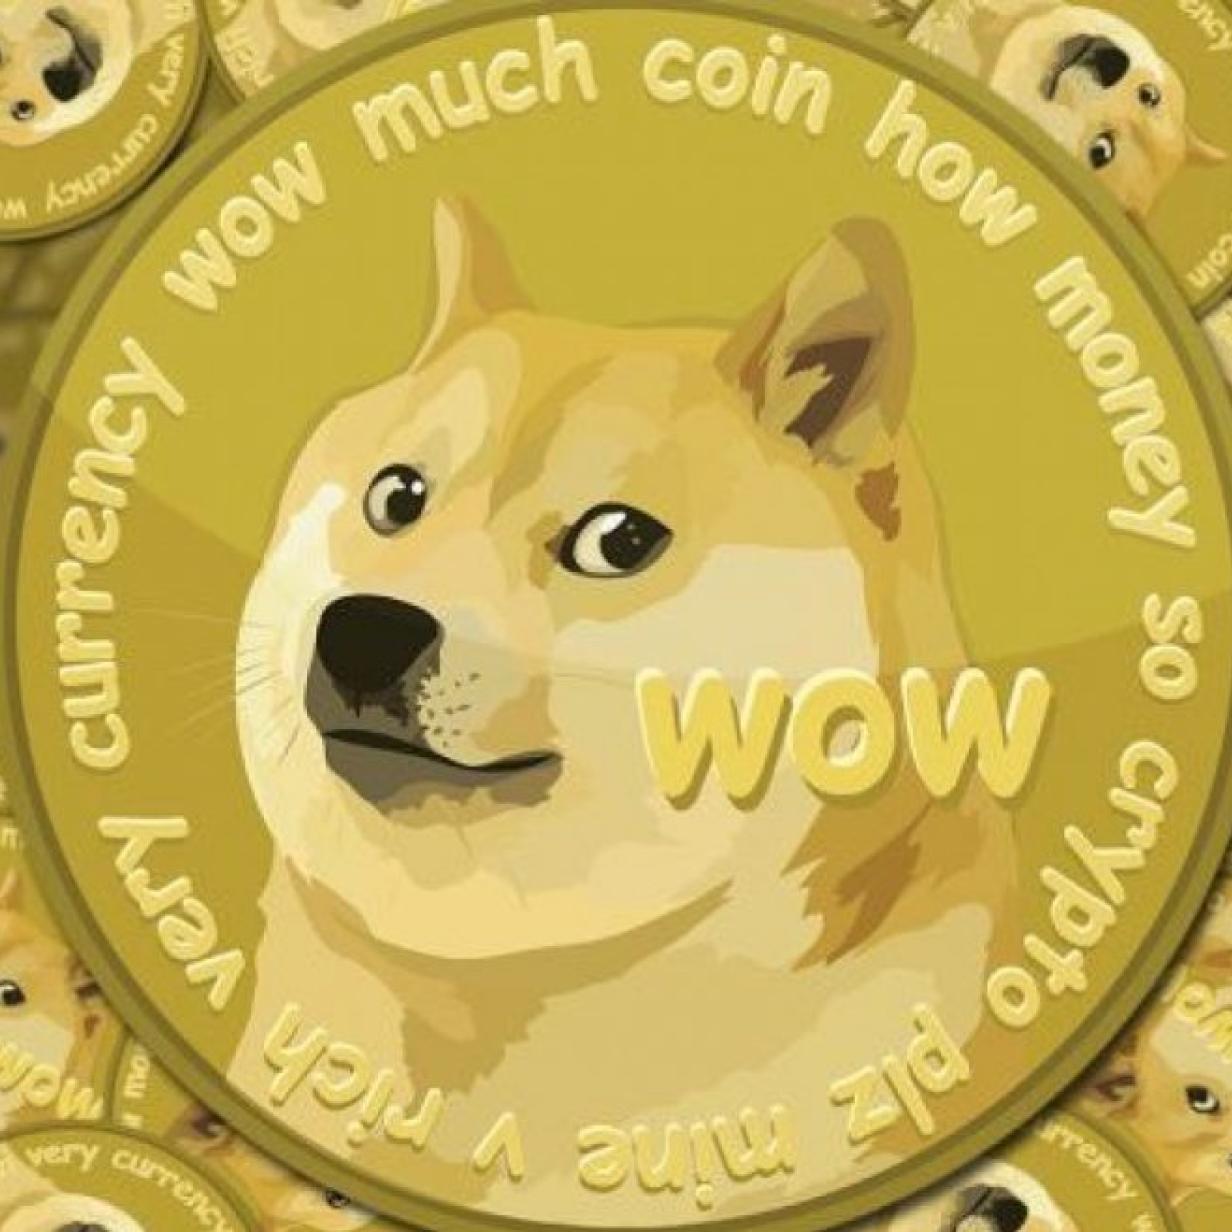 Spass Kryptowahrung Dogecoin Steigt Auf Rekordhoch